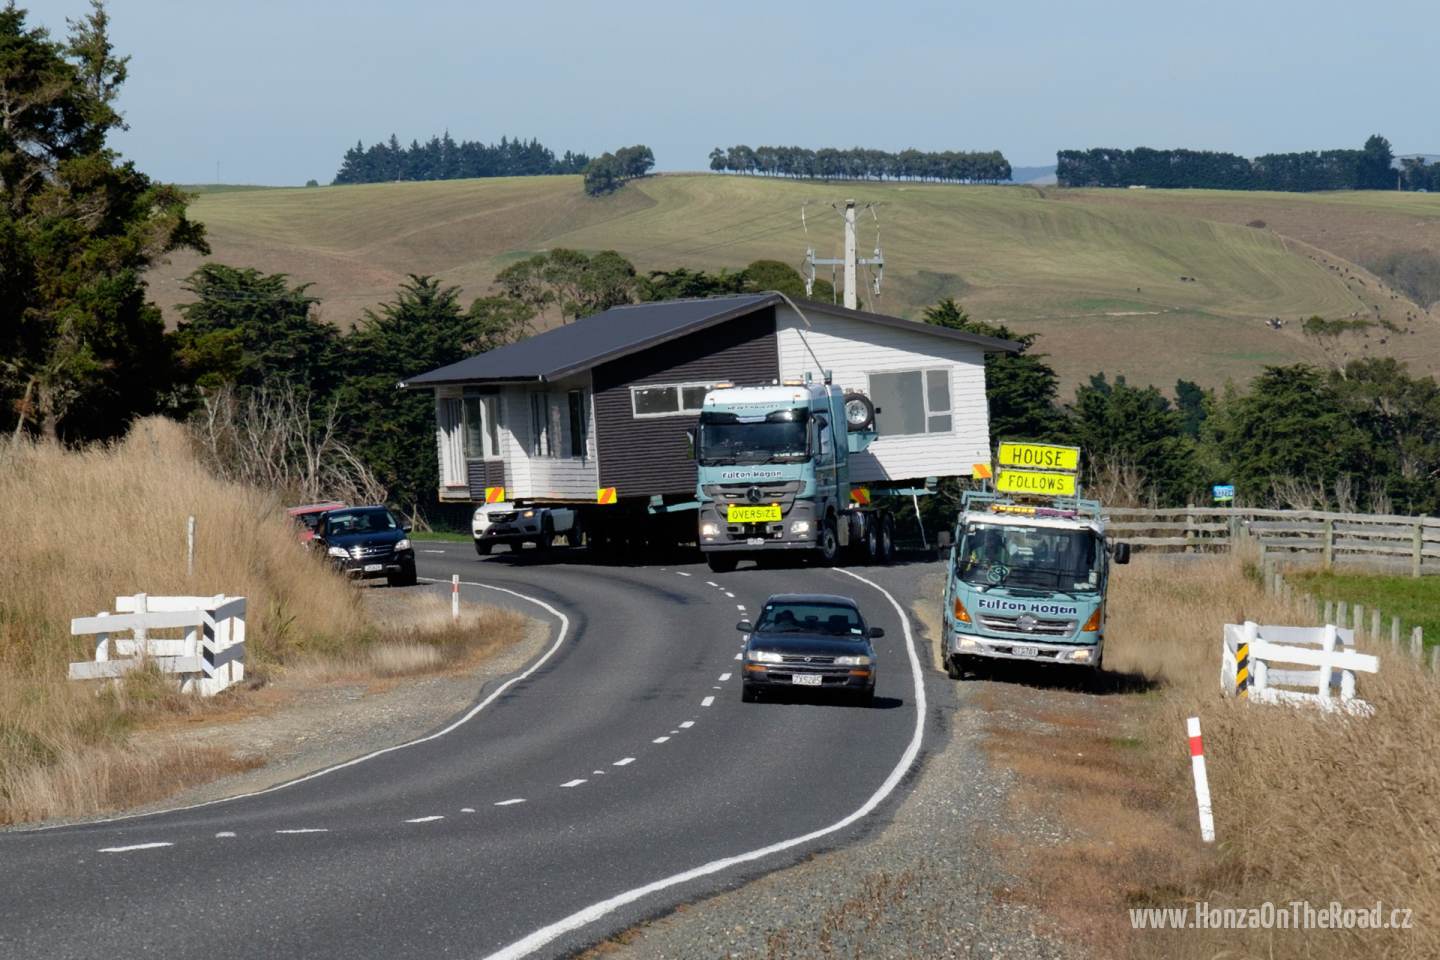 Nový Zéland, Zakoupený dům míří na místo určení / New Zealand, The purchased house is being transferred into its destination